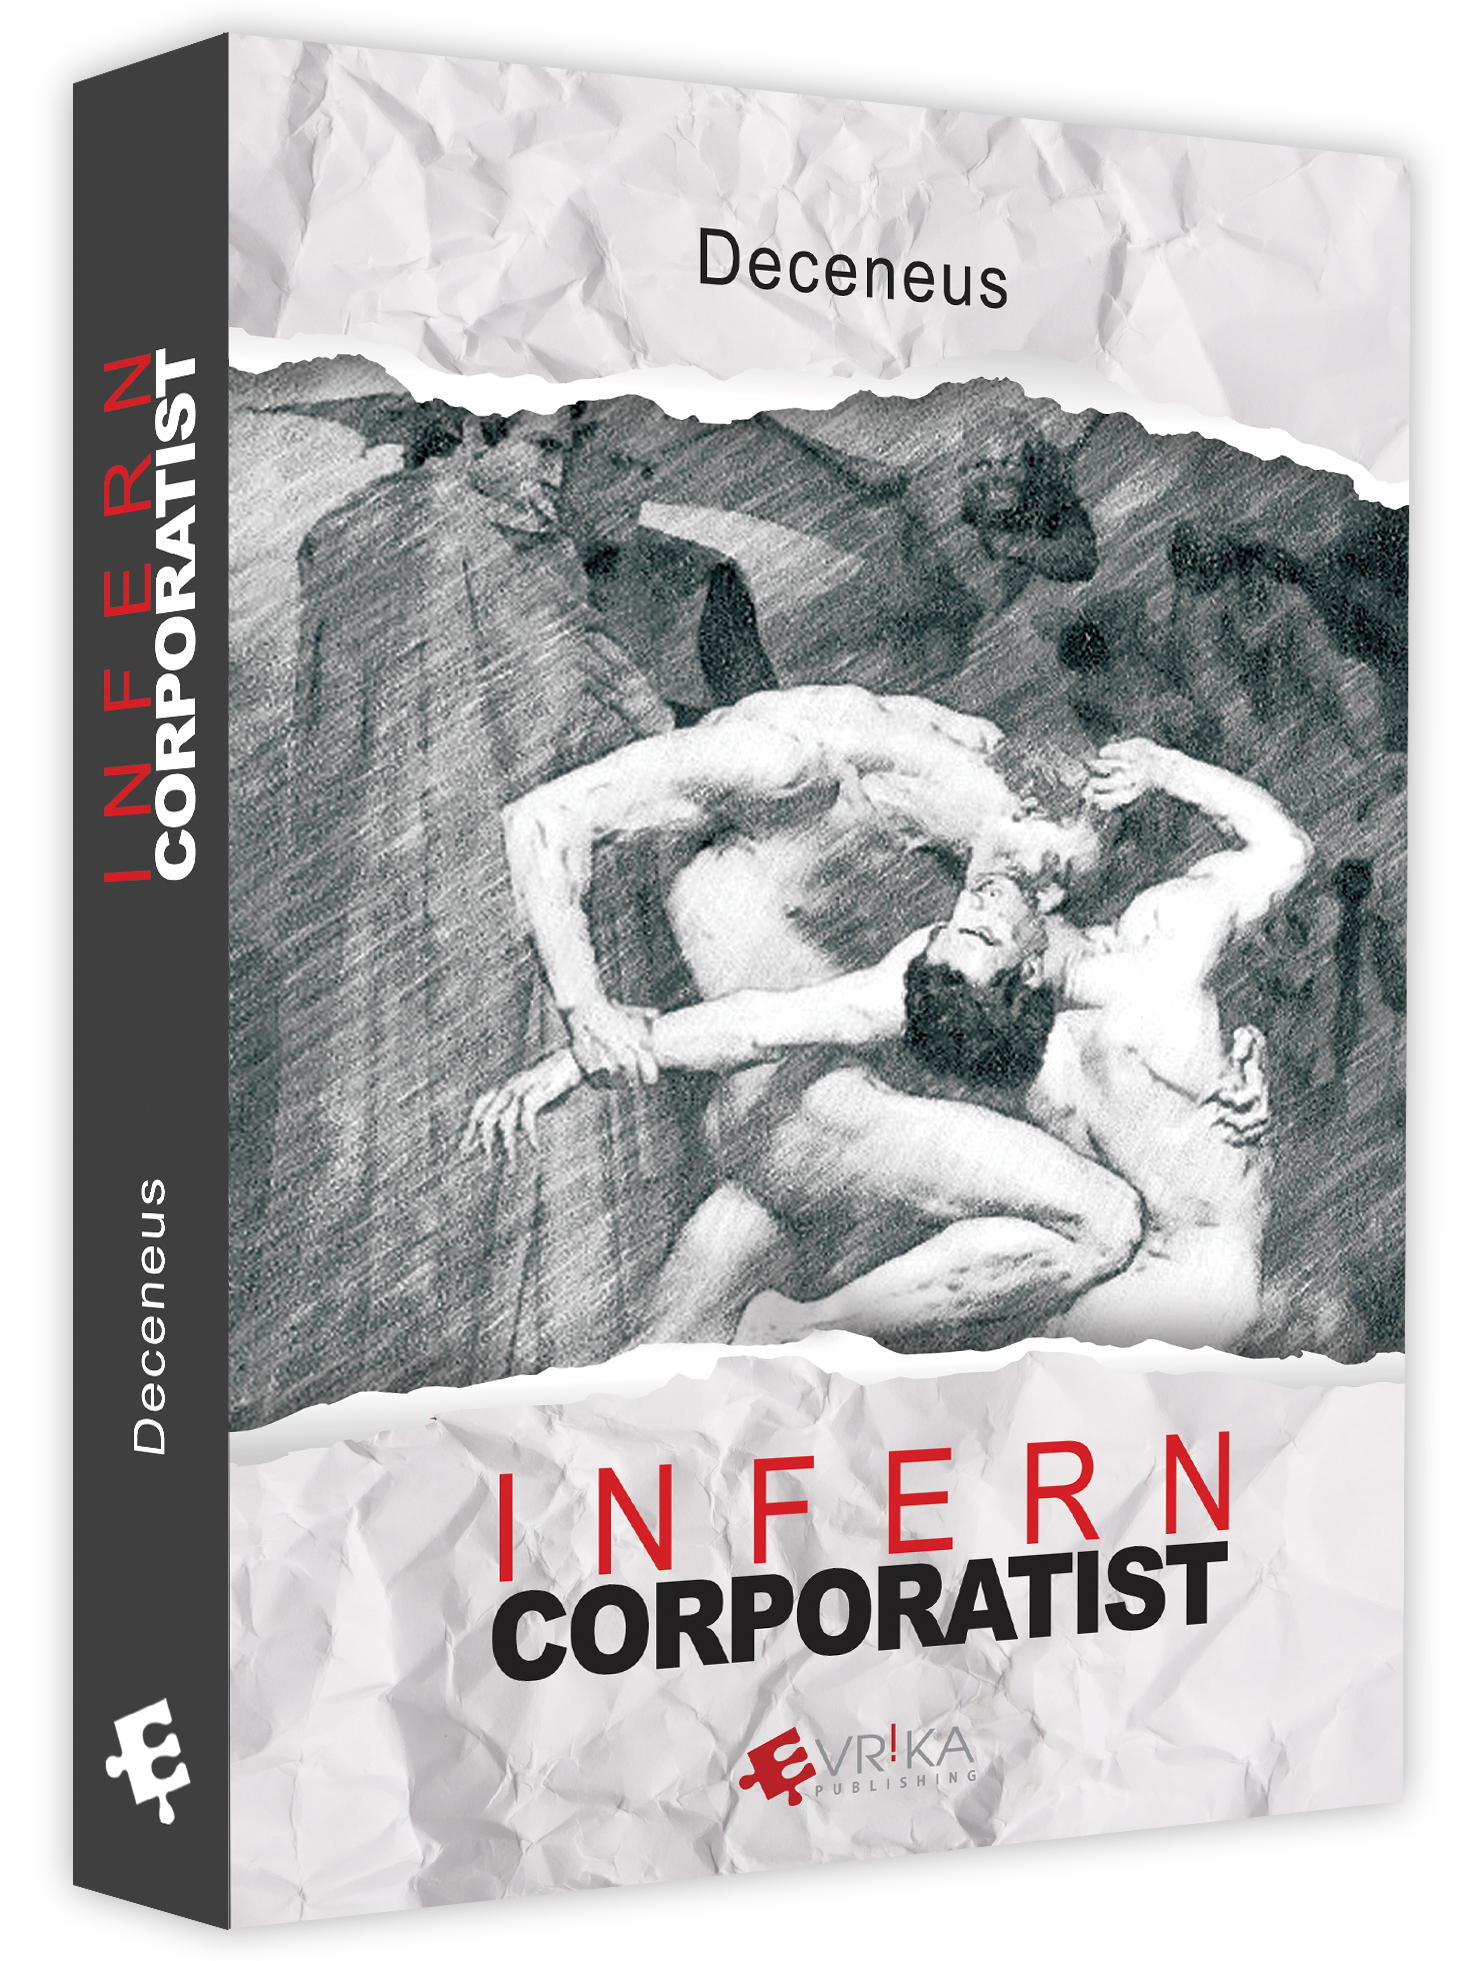 Infern corporatist | Deceneus Business